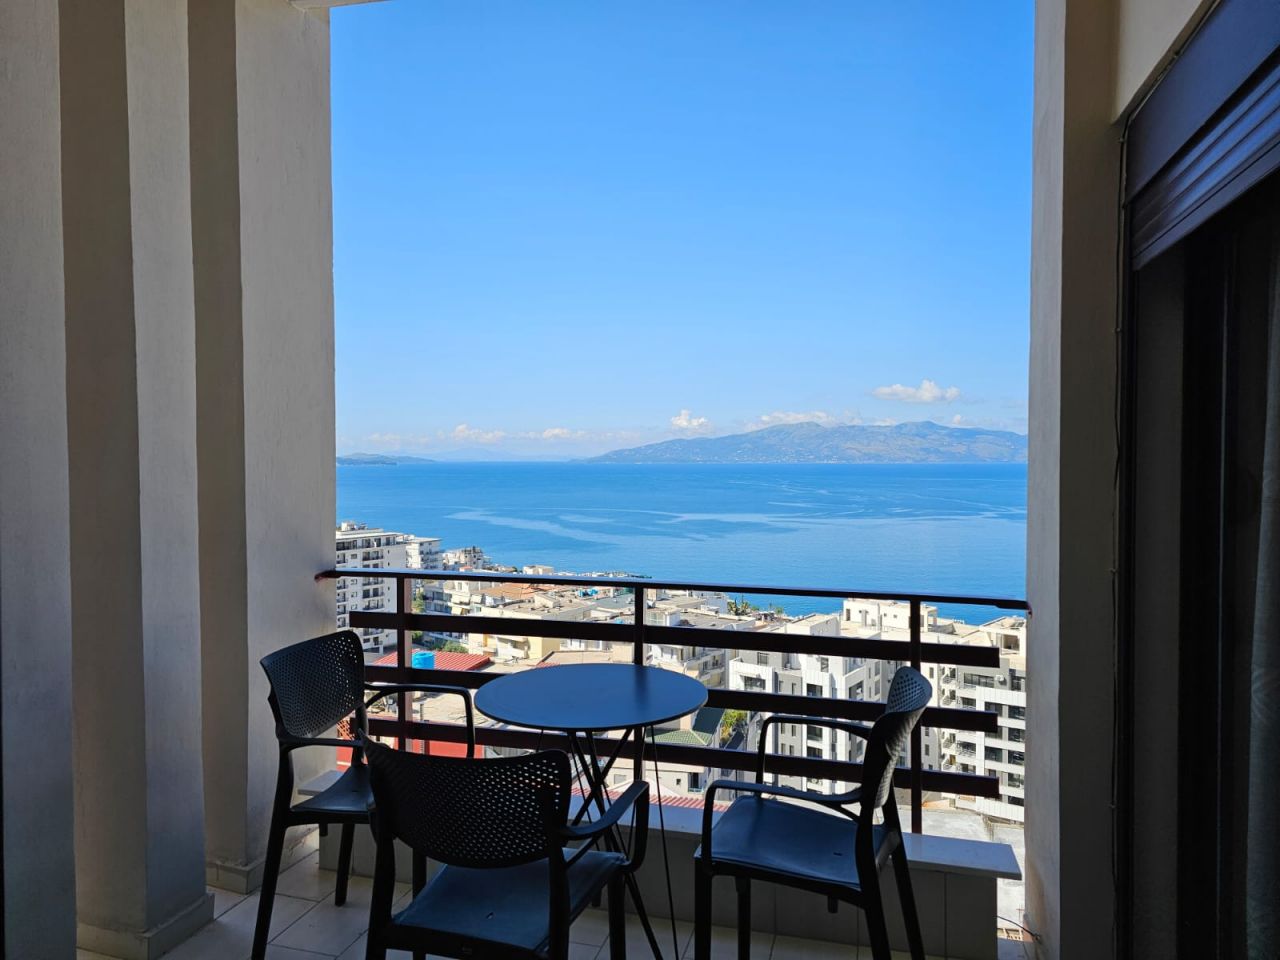 Wohnung Zu Verkaufen In Saranda Albanien, Mit Panoramablick Auf Das Meer, Gut Möbliert Und Einer Hervorragenden Bauweise